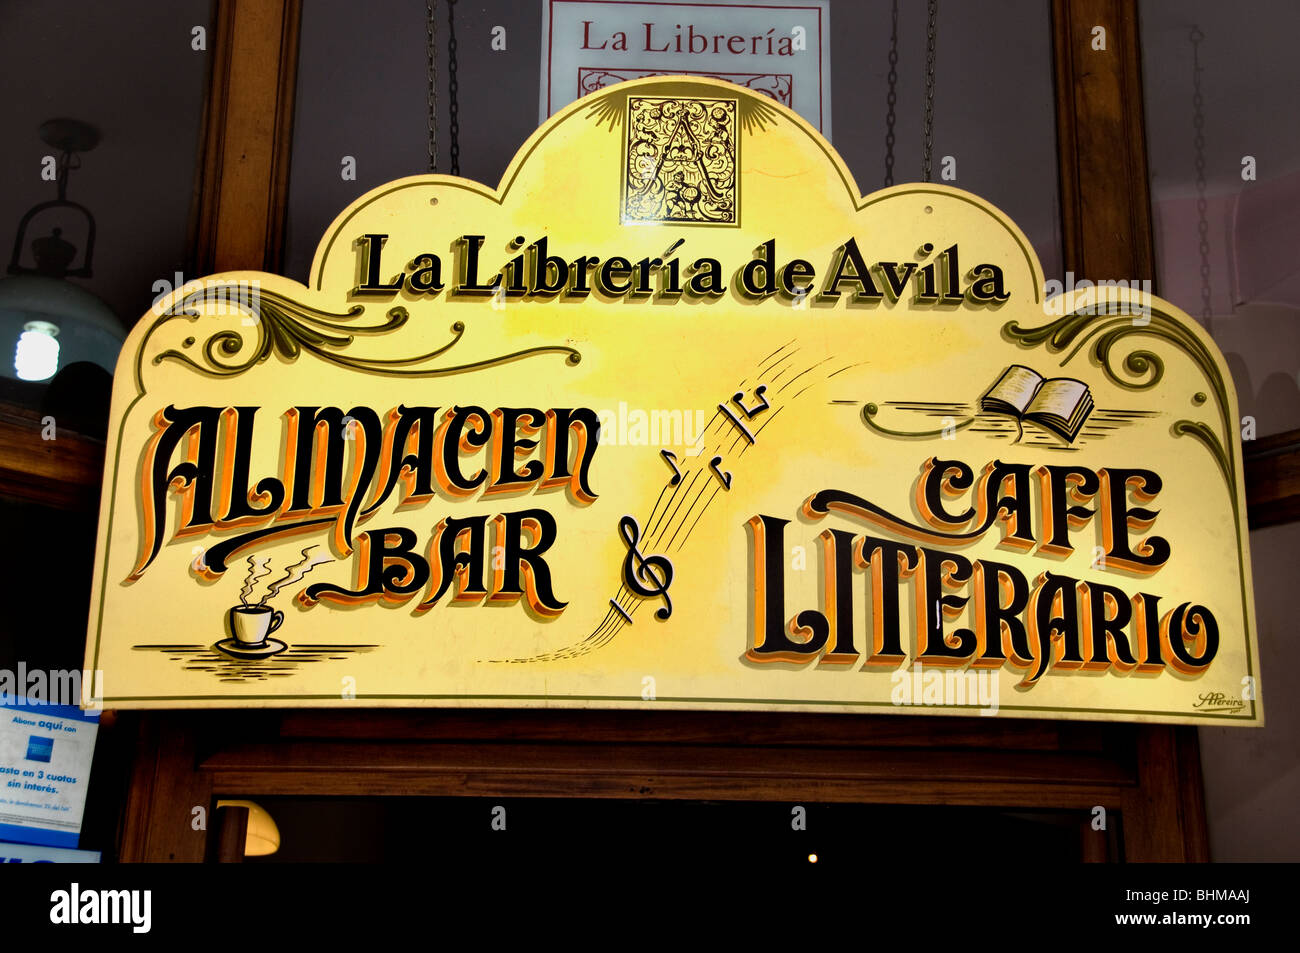 La Libreria de Avila Buenos Aires Argentina San Telmo Bar libreria letteraria cafe Foto Stock